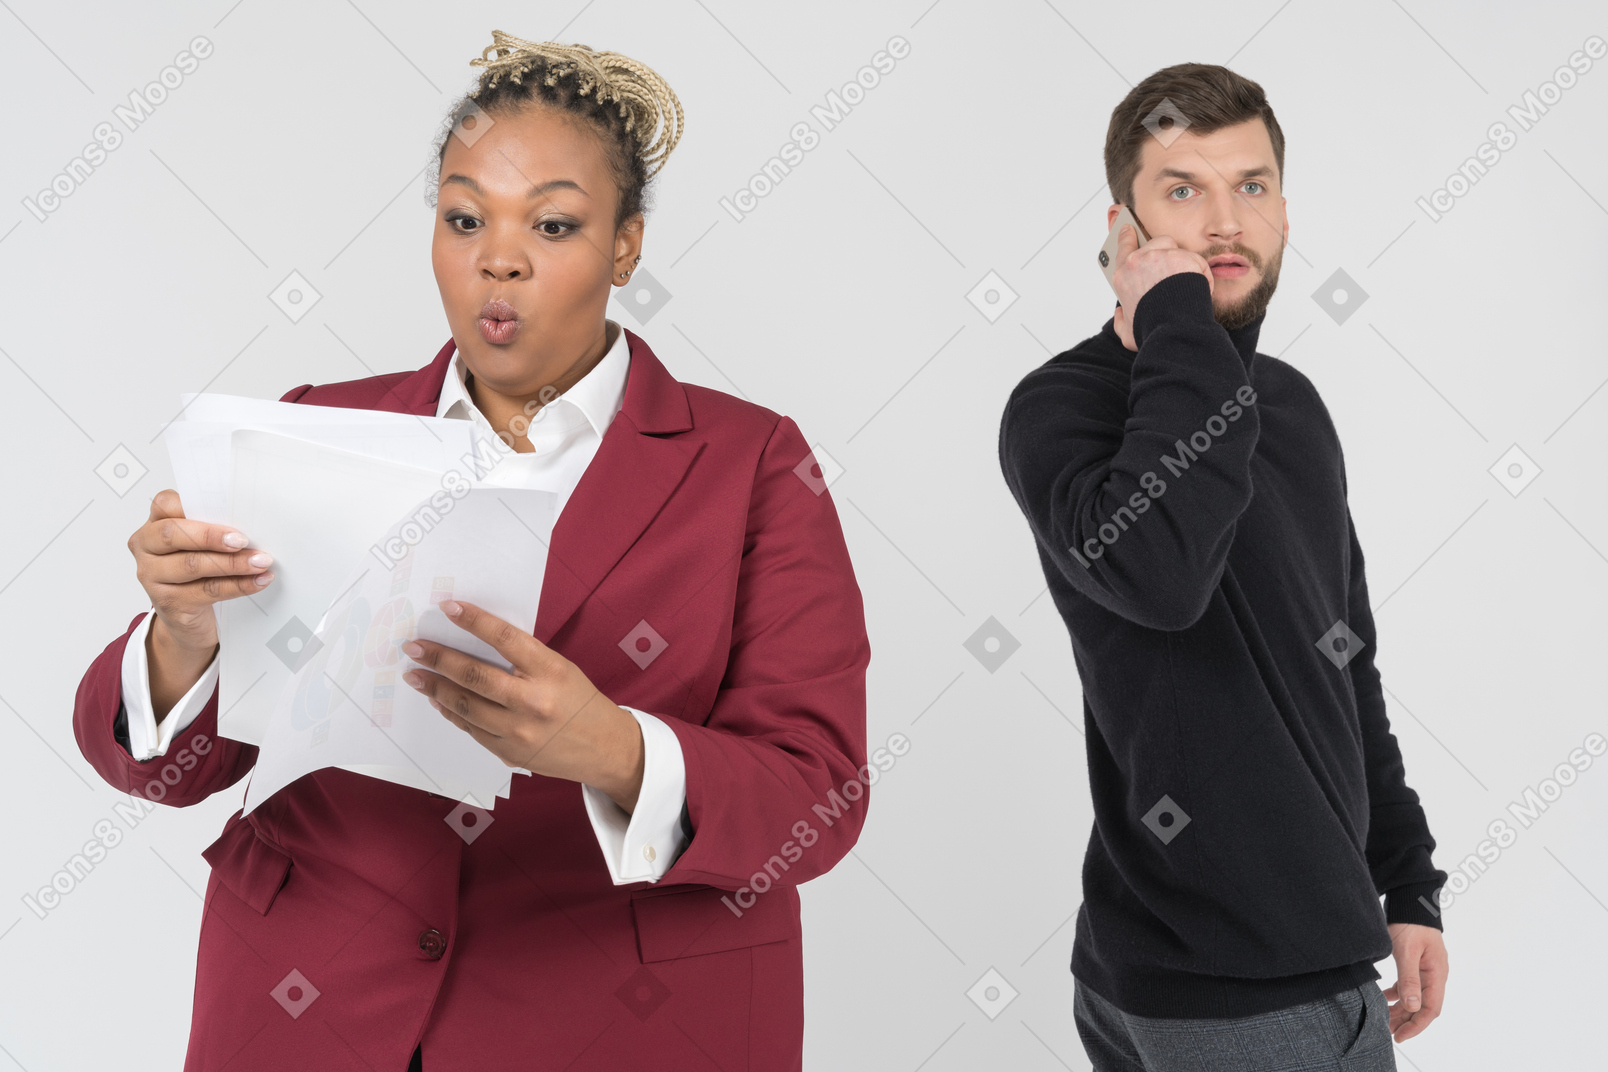 Manager sorpreso leggendo il rapporto del dipendente